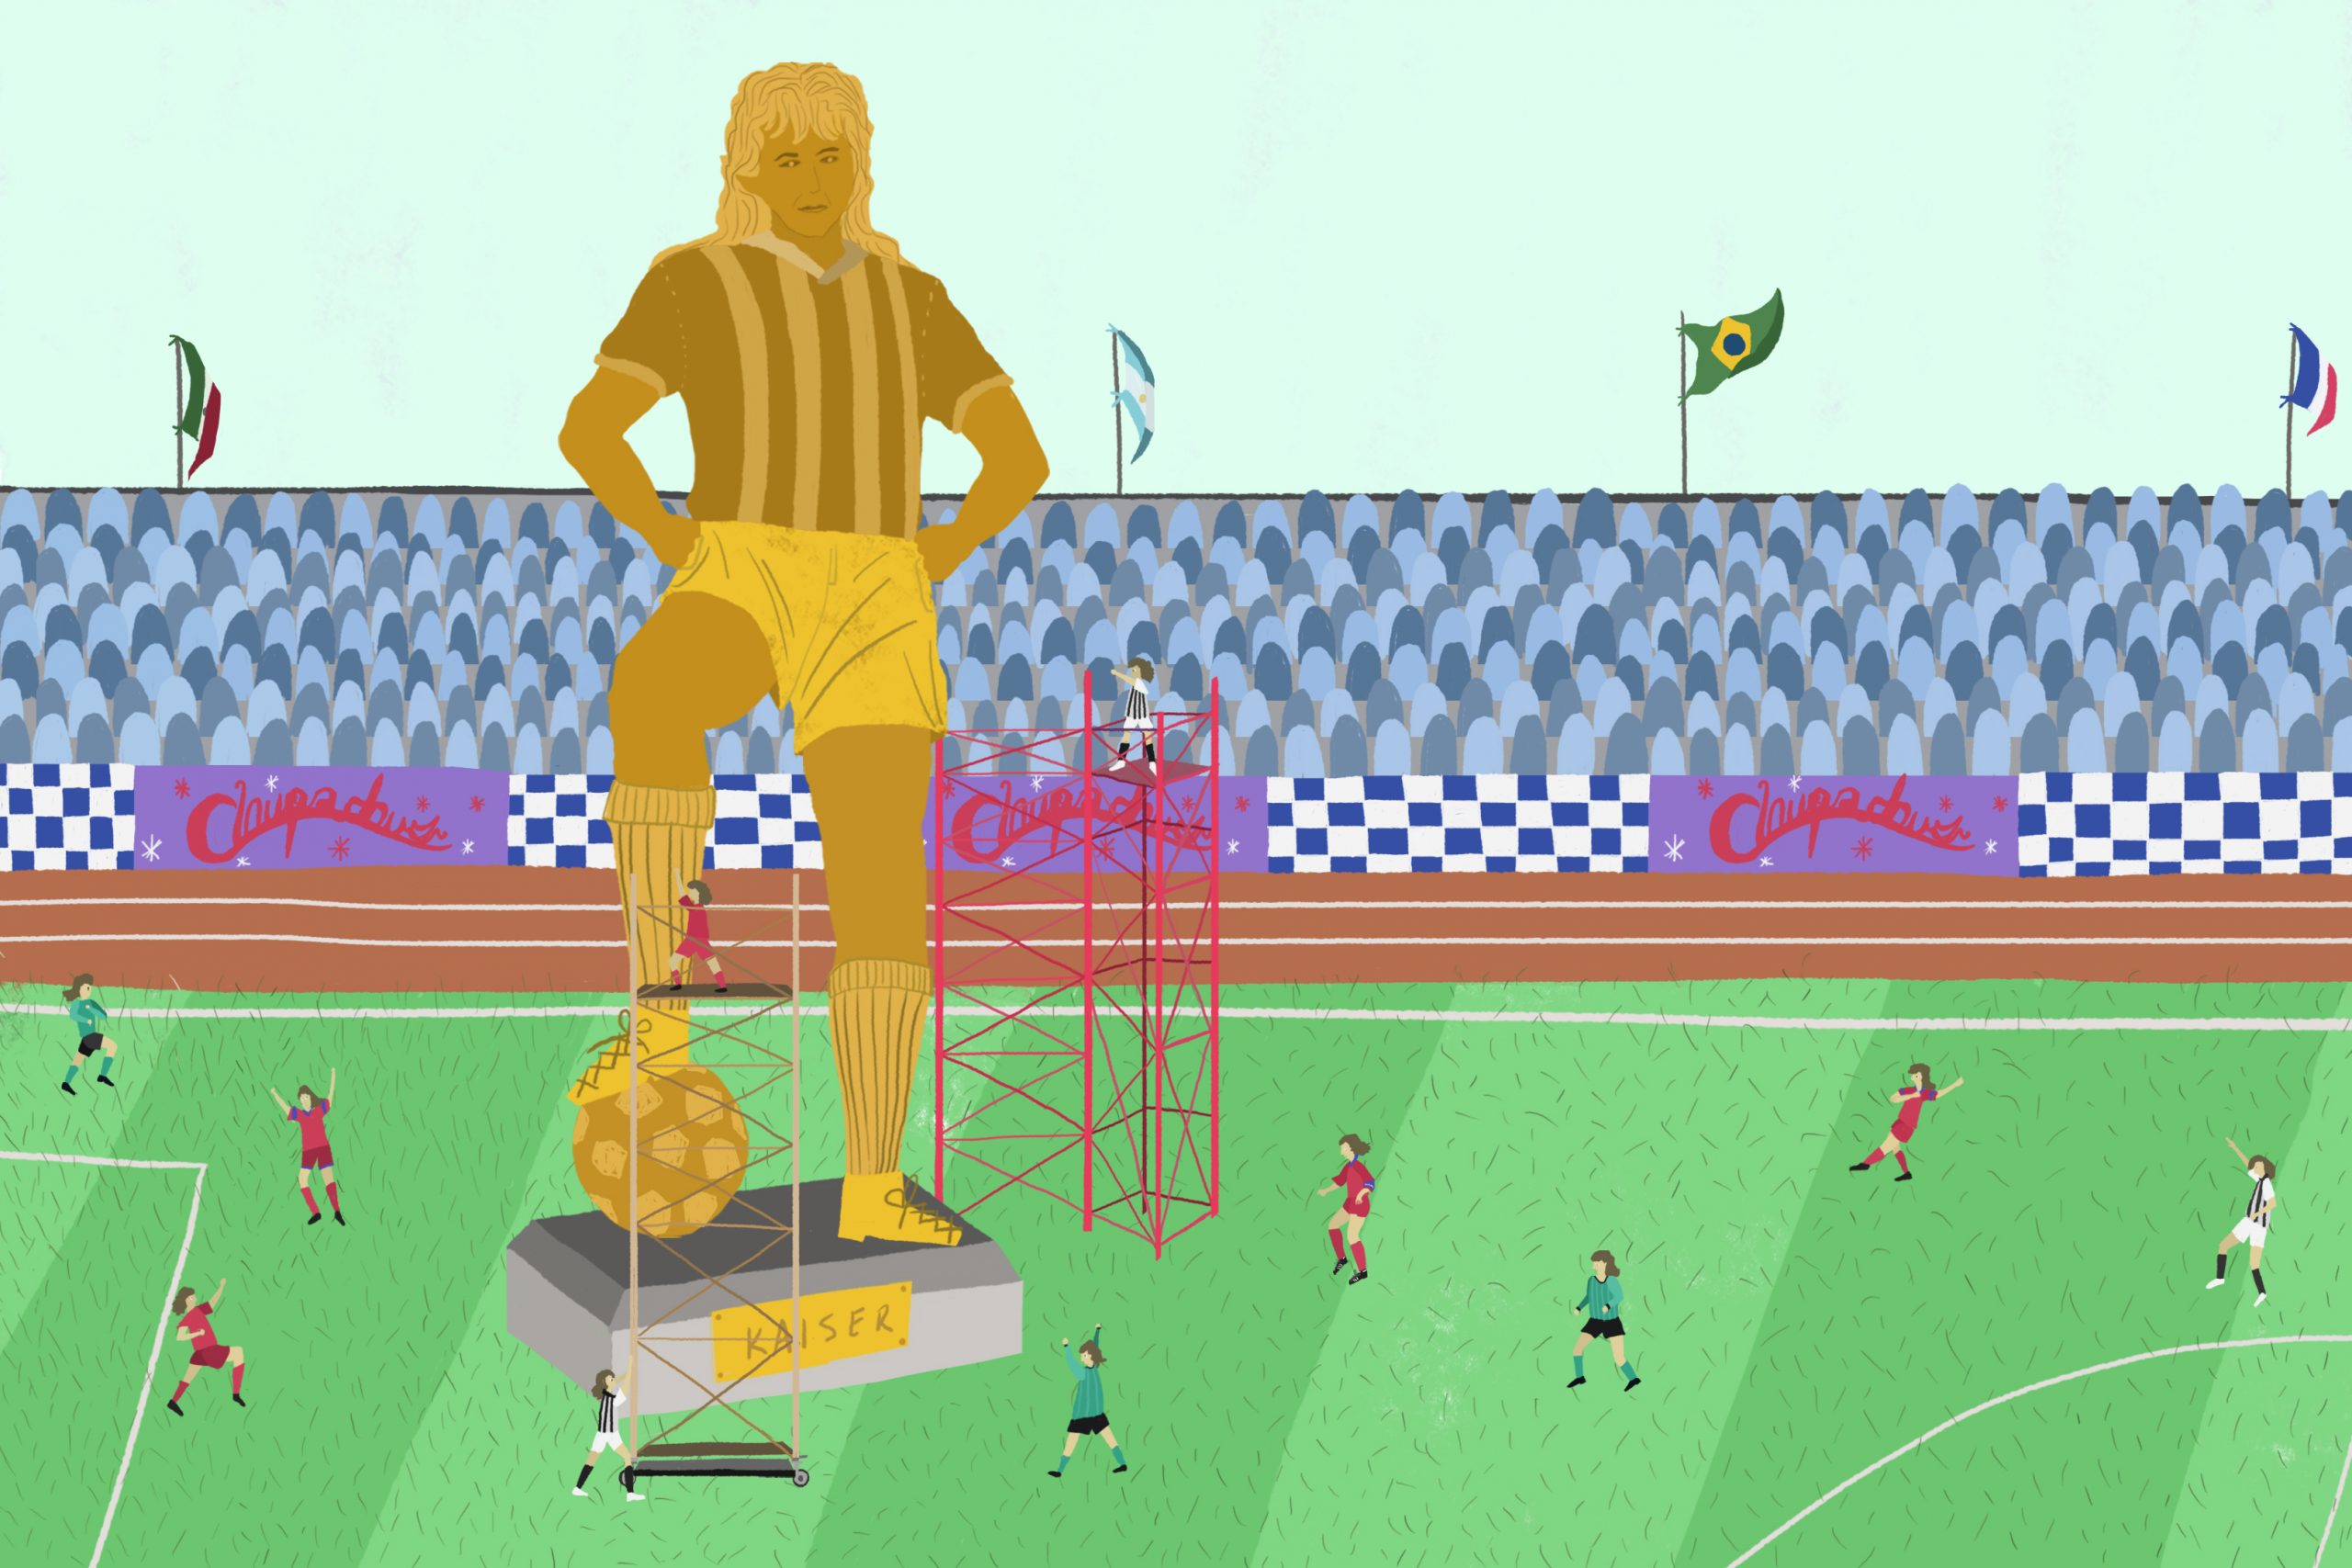 Estatua de Kaiser en una cancha de fútbol ilustrando el episodio "Kaiser Fútbol Club" de Radio Ambulante